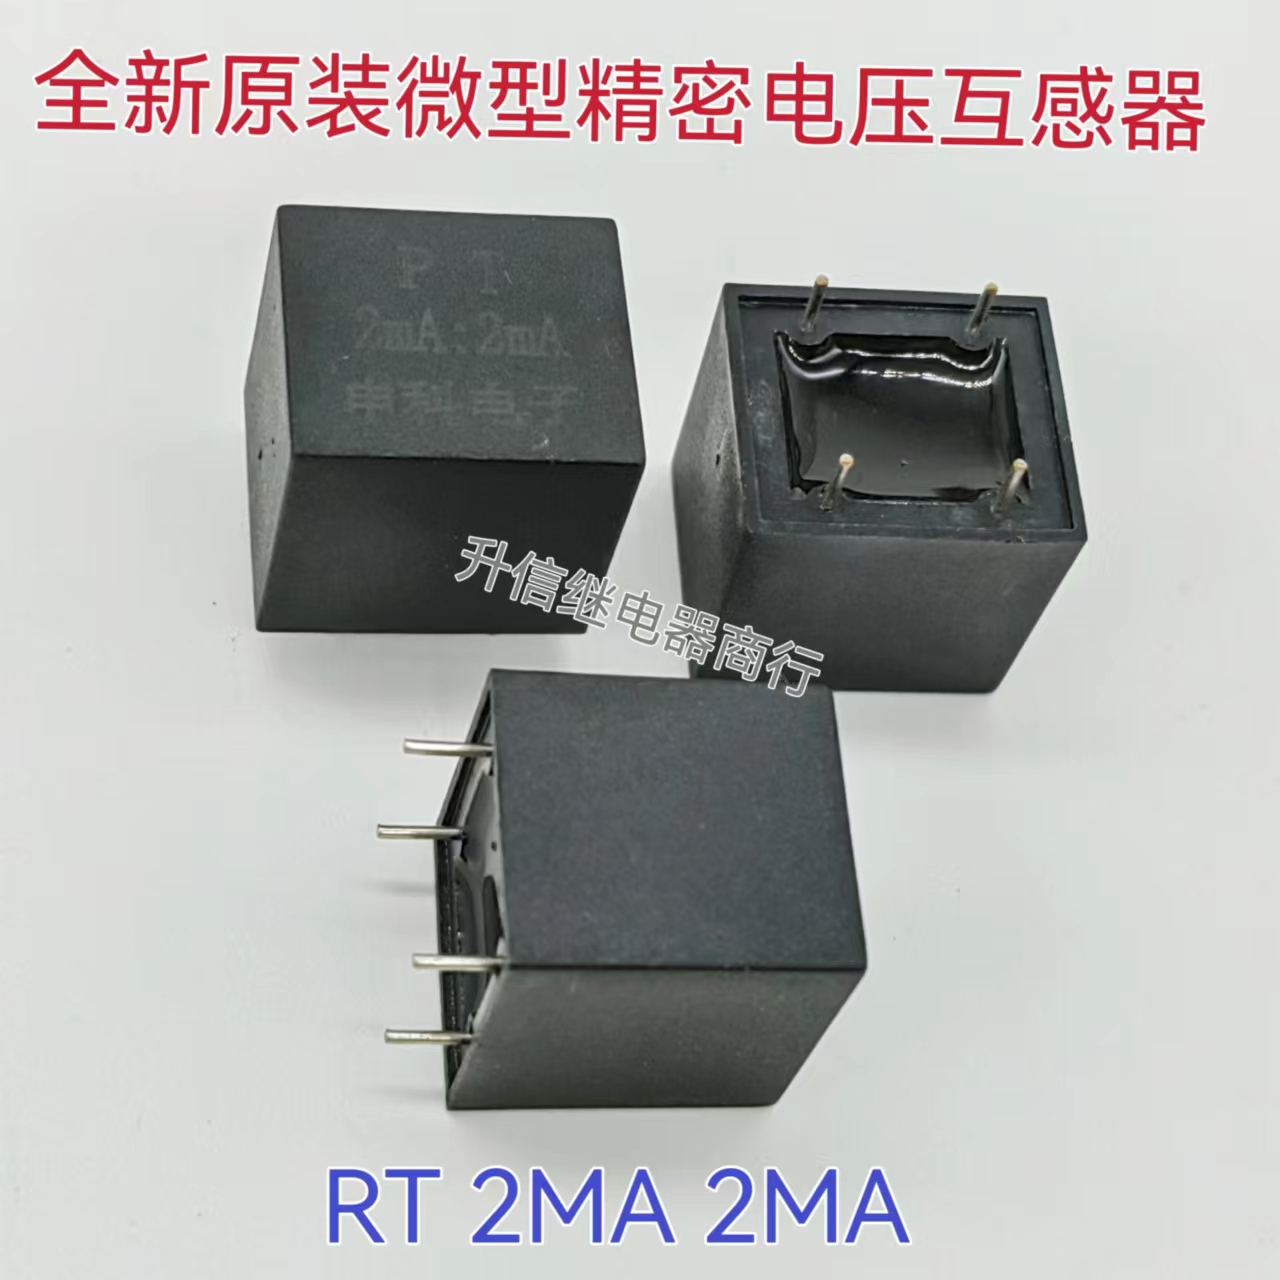 全新原装 4脚位 微型精密电压互感器 PT 2mA/2mA 传感器 现货直拍